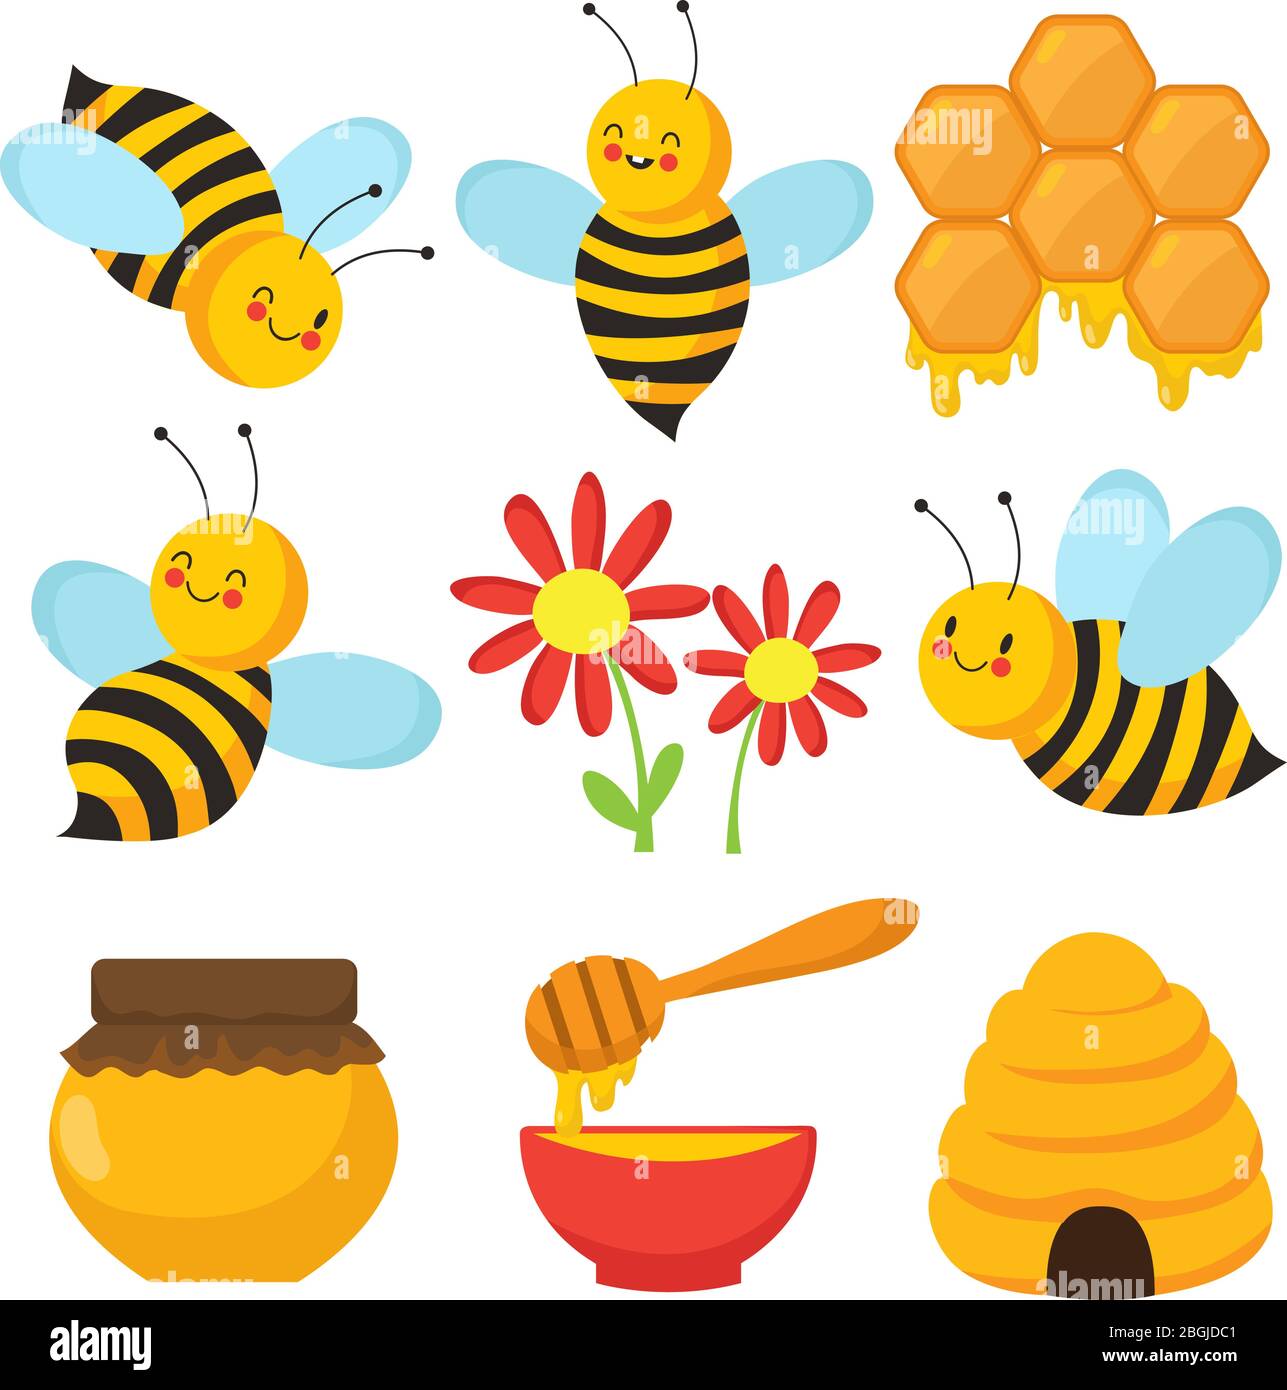 Ape cartoon. Belle api, fiori e miele. Set di caratteri vettoriali isolati. Illustrazione di insetto di ape e miele dolce Illustrazione Vettoriale